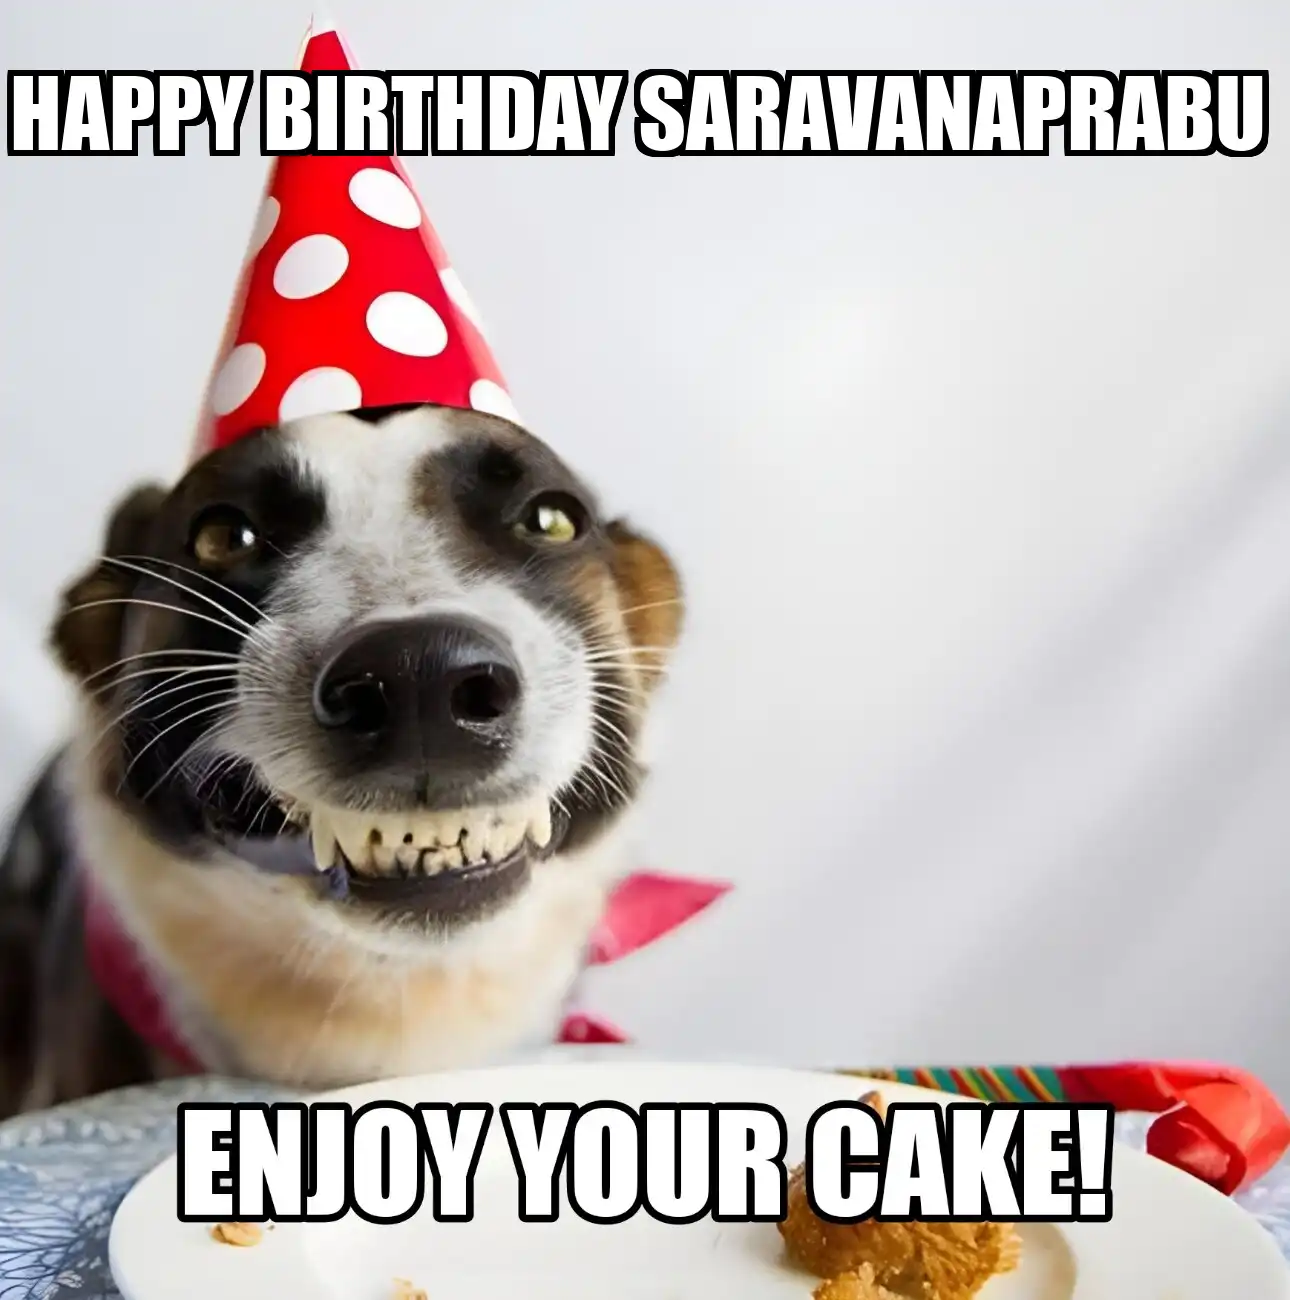 Happy Birthday Saravanaprabu Enjoy Your Cake Dog Meme